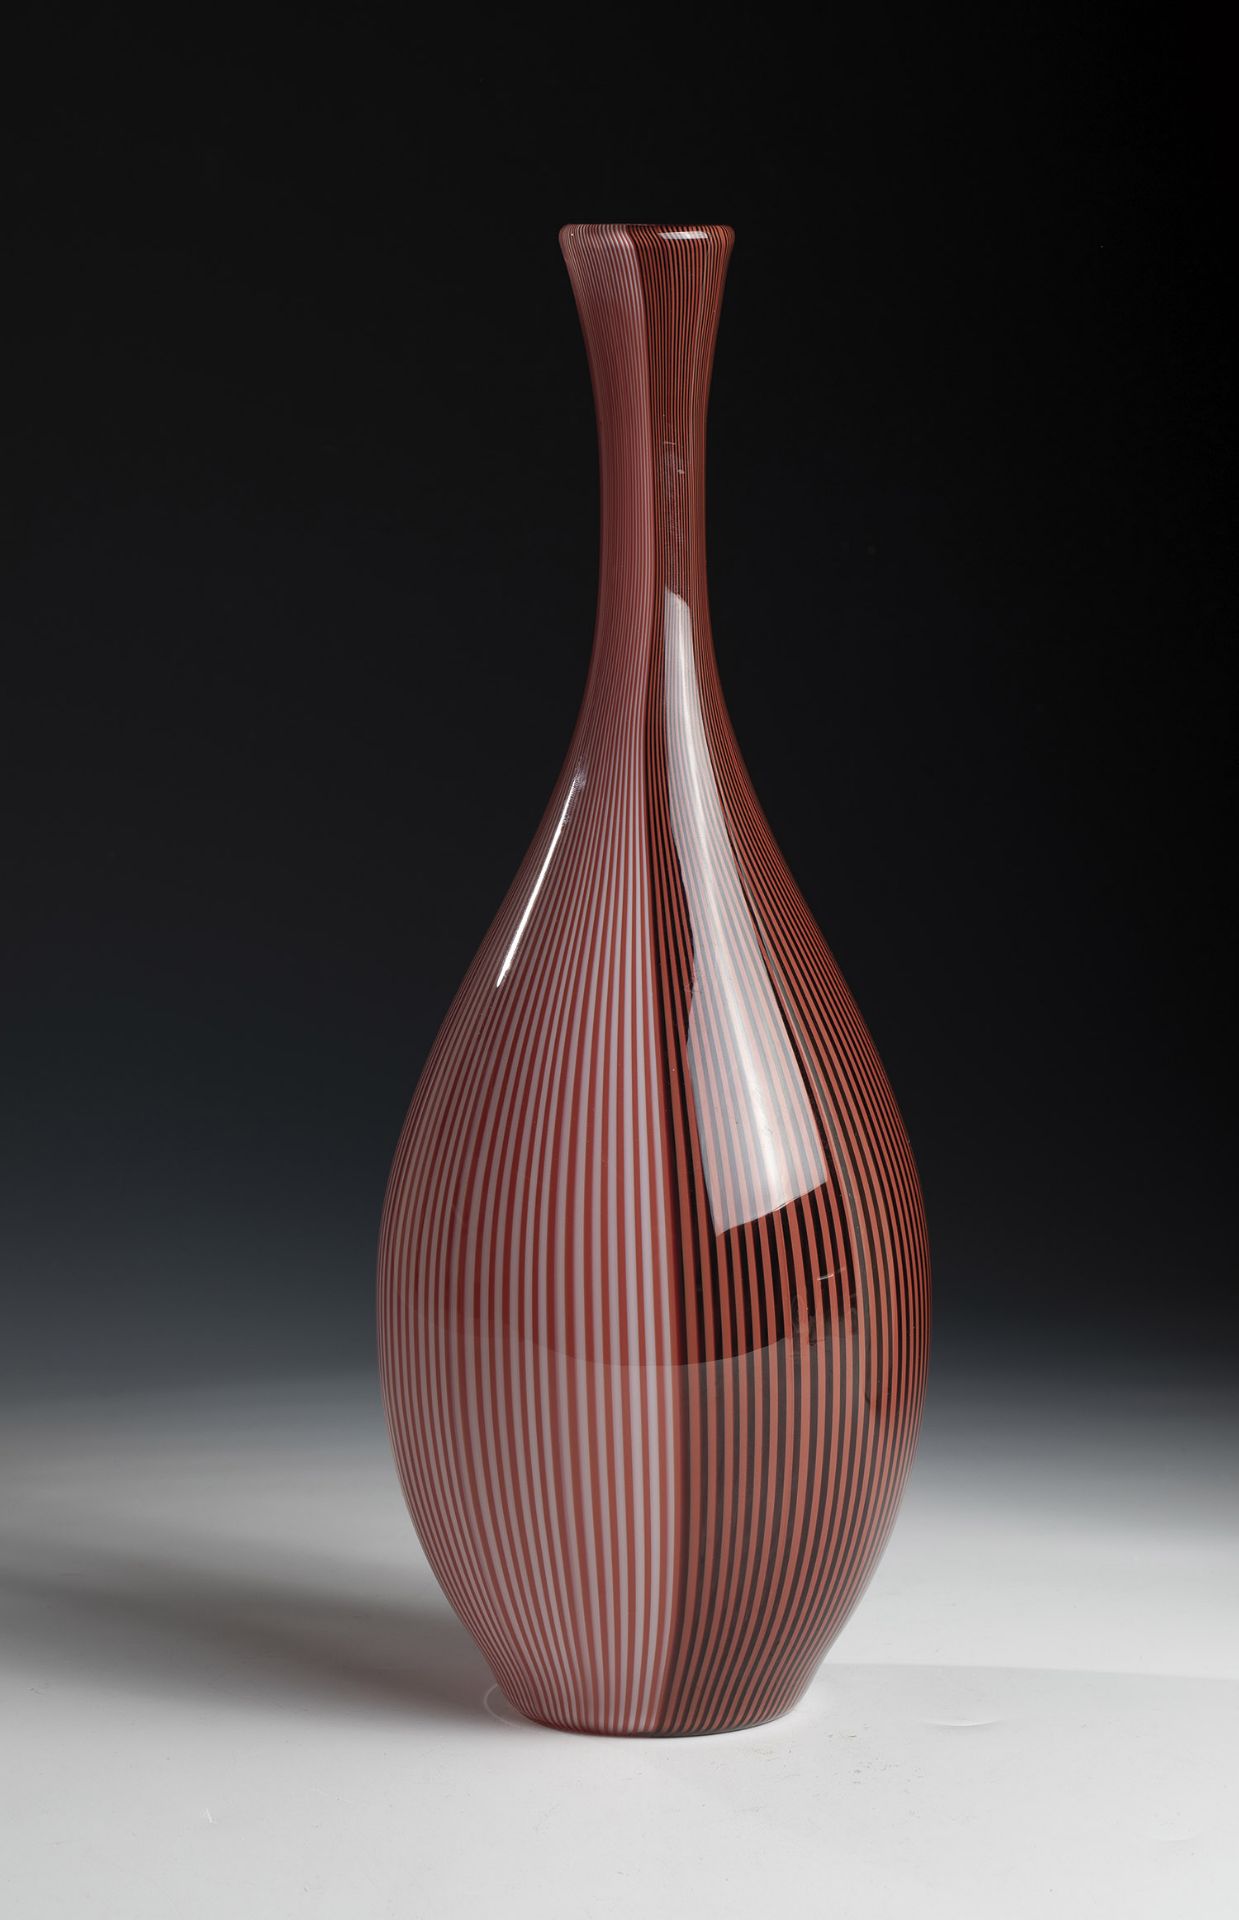 Vase ''Tessuto'' Carlo Scarpa (design), Venini, Murano, c. 1940 Colourless glass, with vertically